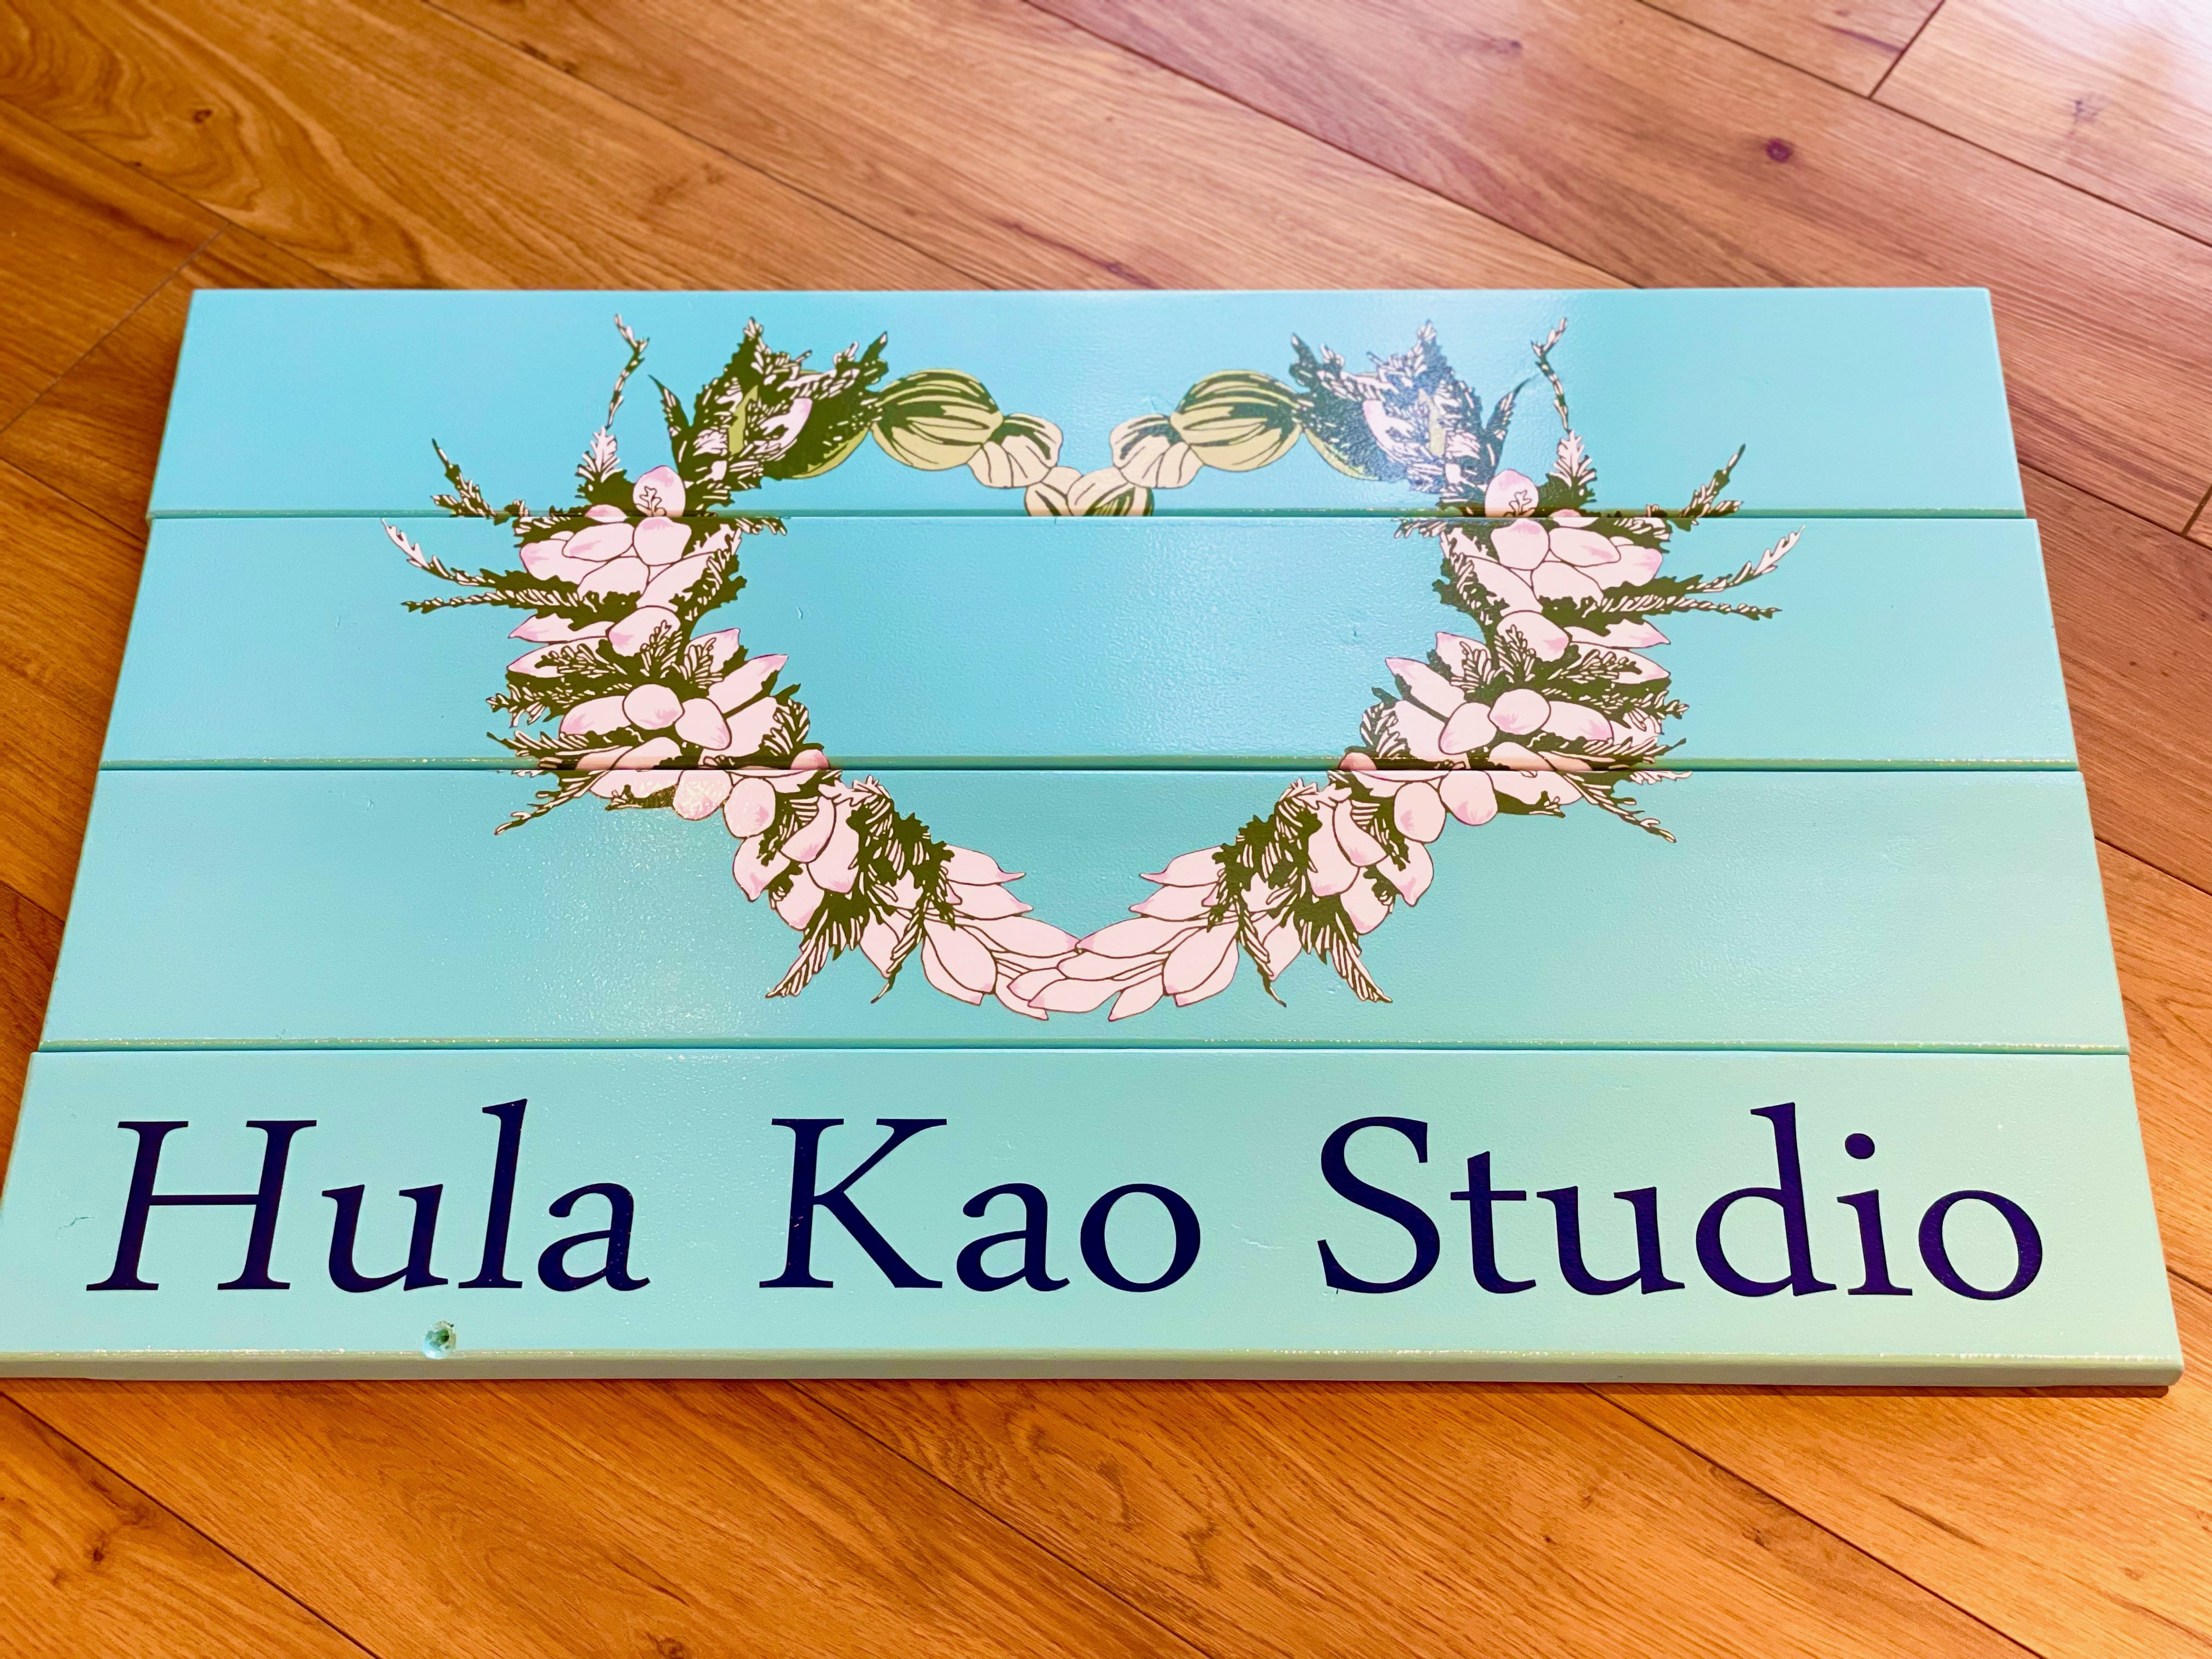 『Hula Kao Studioのロゴマークが誕生しました』